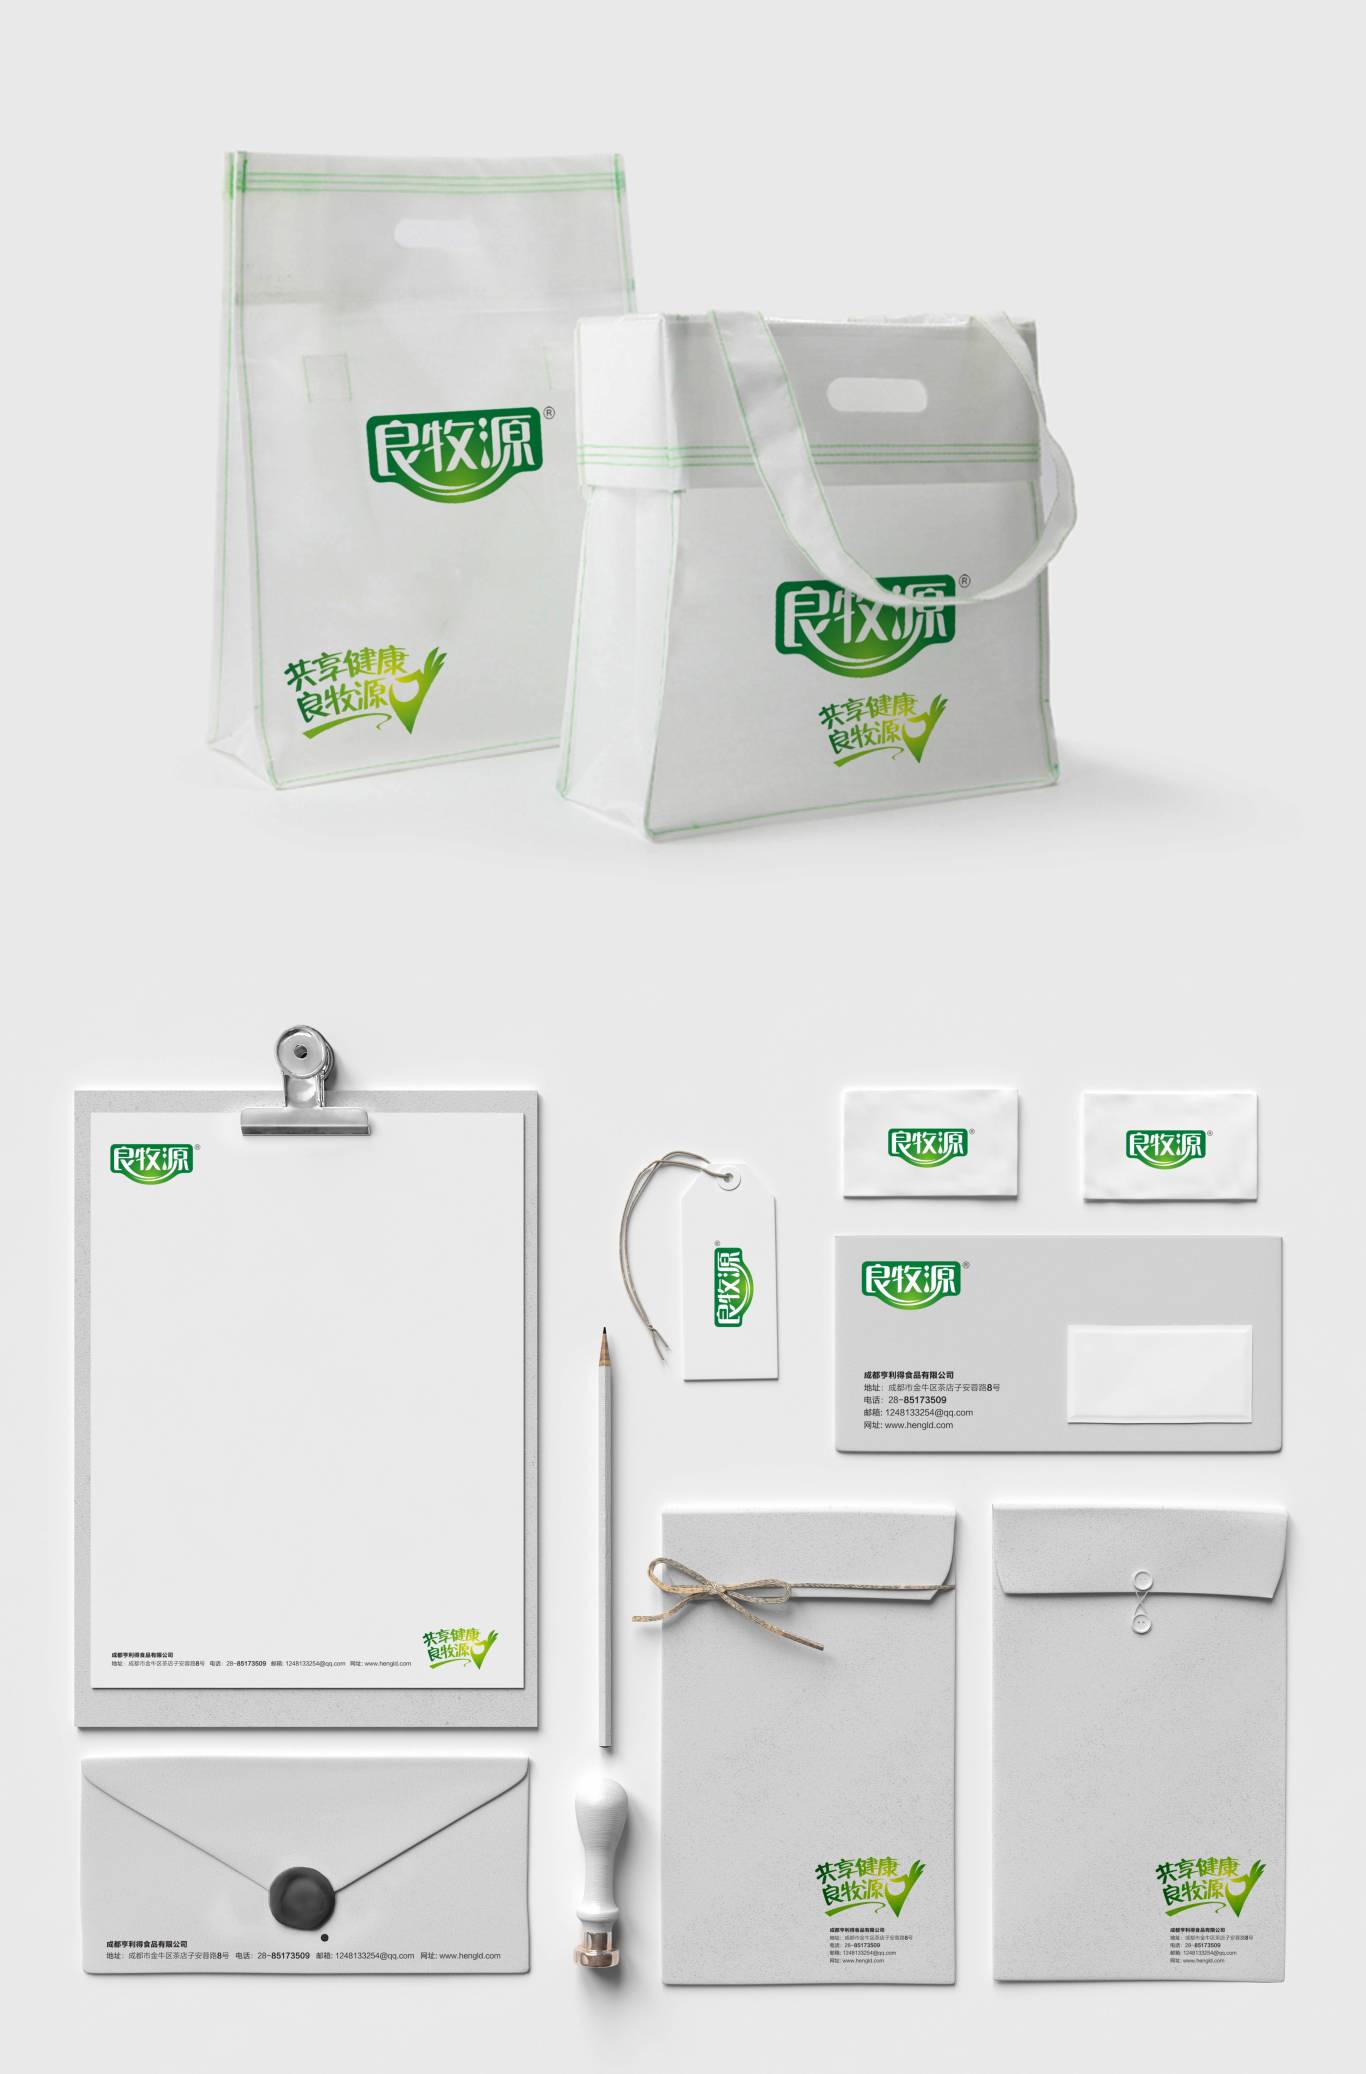 良牧源+康牧源品牌形象及产品包装设计图1